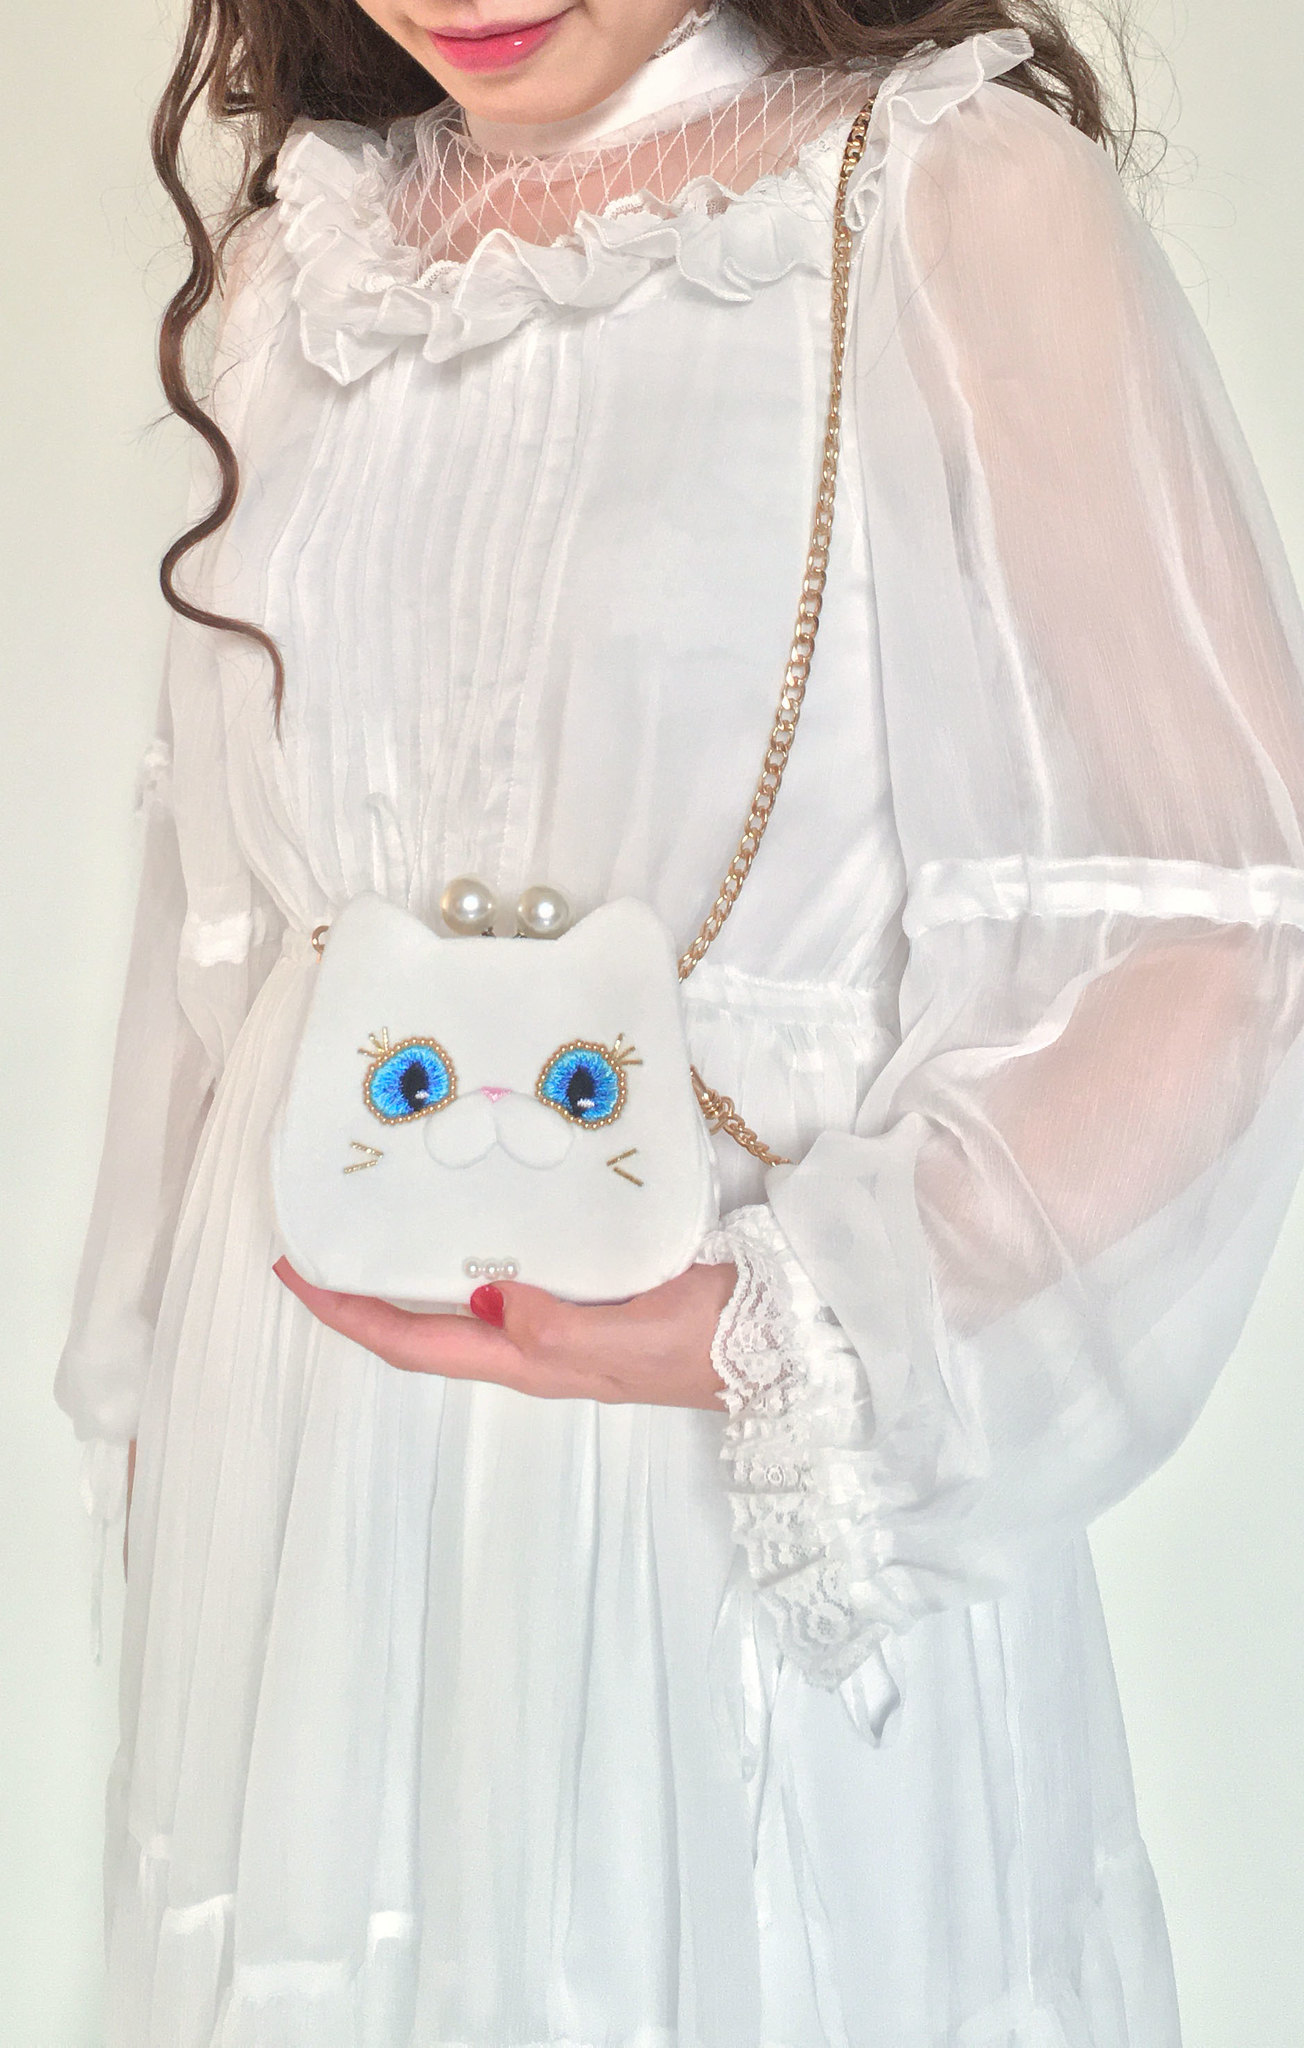 穿白色蕾絲連衣裙的捲髮女人左手捧著白貓夫人短夾錢包